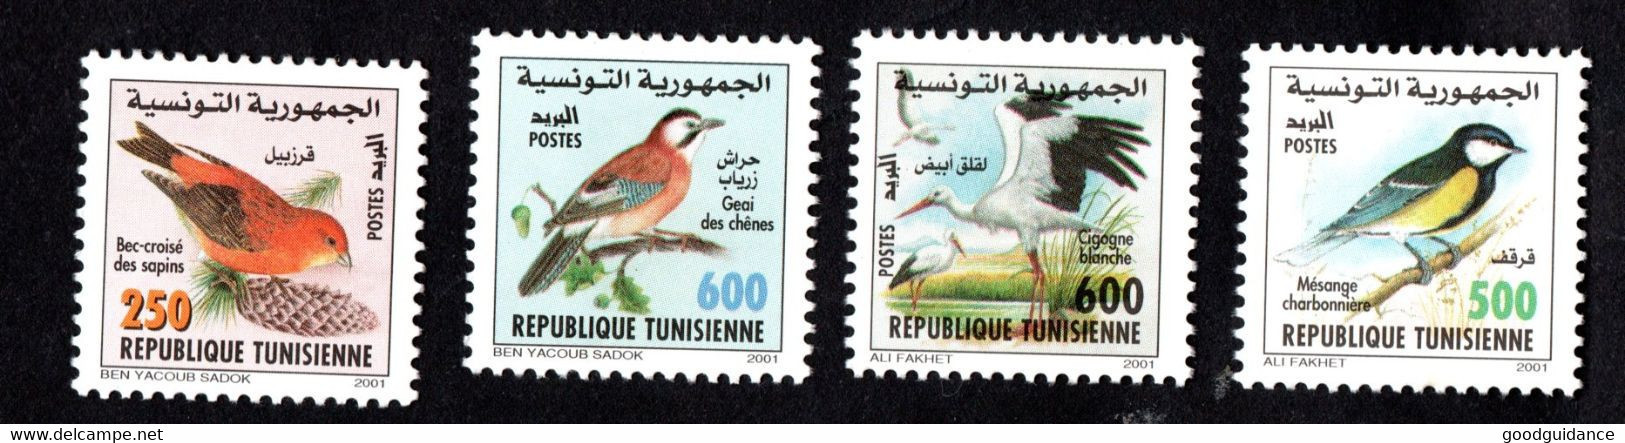 2001-Tunisie-Oiseaux De Tunisie-Cigogne Blanche-Bec-croisé– Geai Des Chênes-Mésange-Charbonnière– Série Compl.4v.MNH** - Spatzen